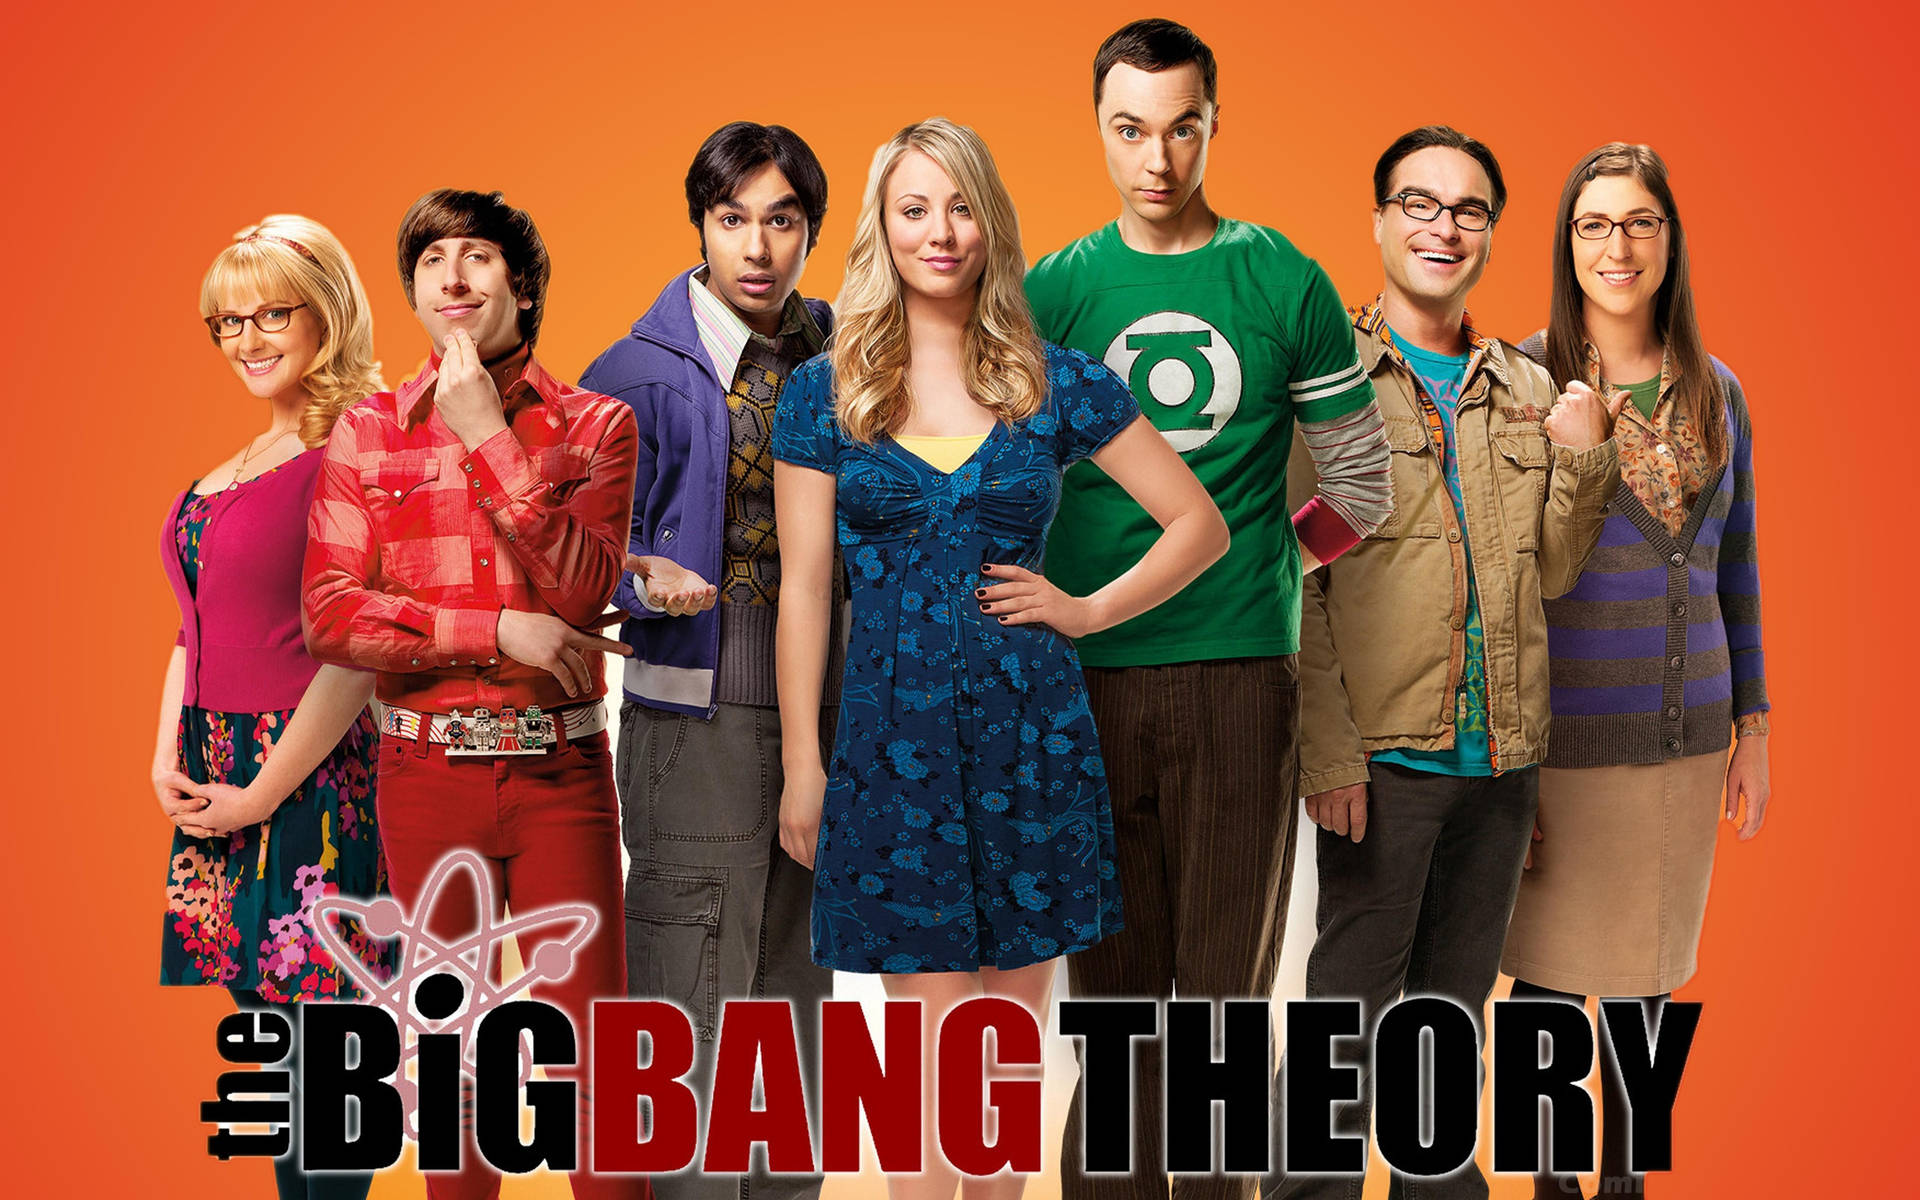 the big bang science wallpaper